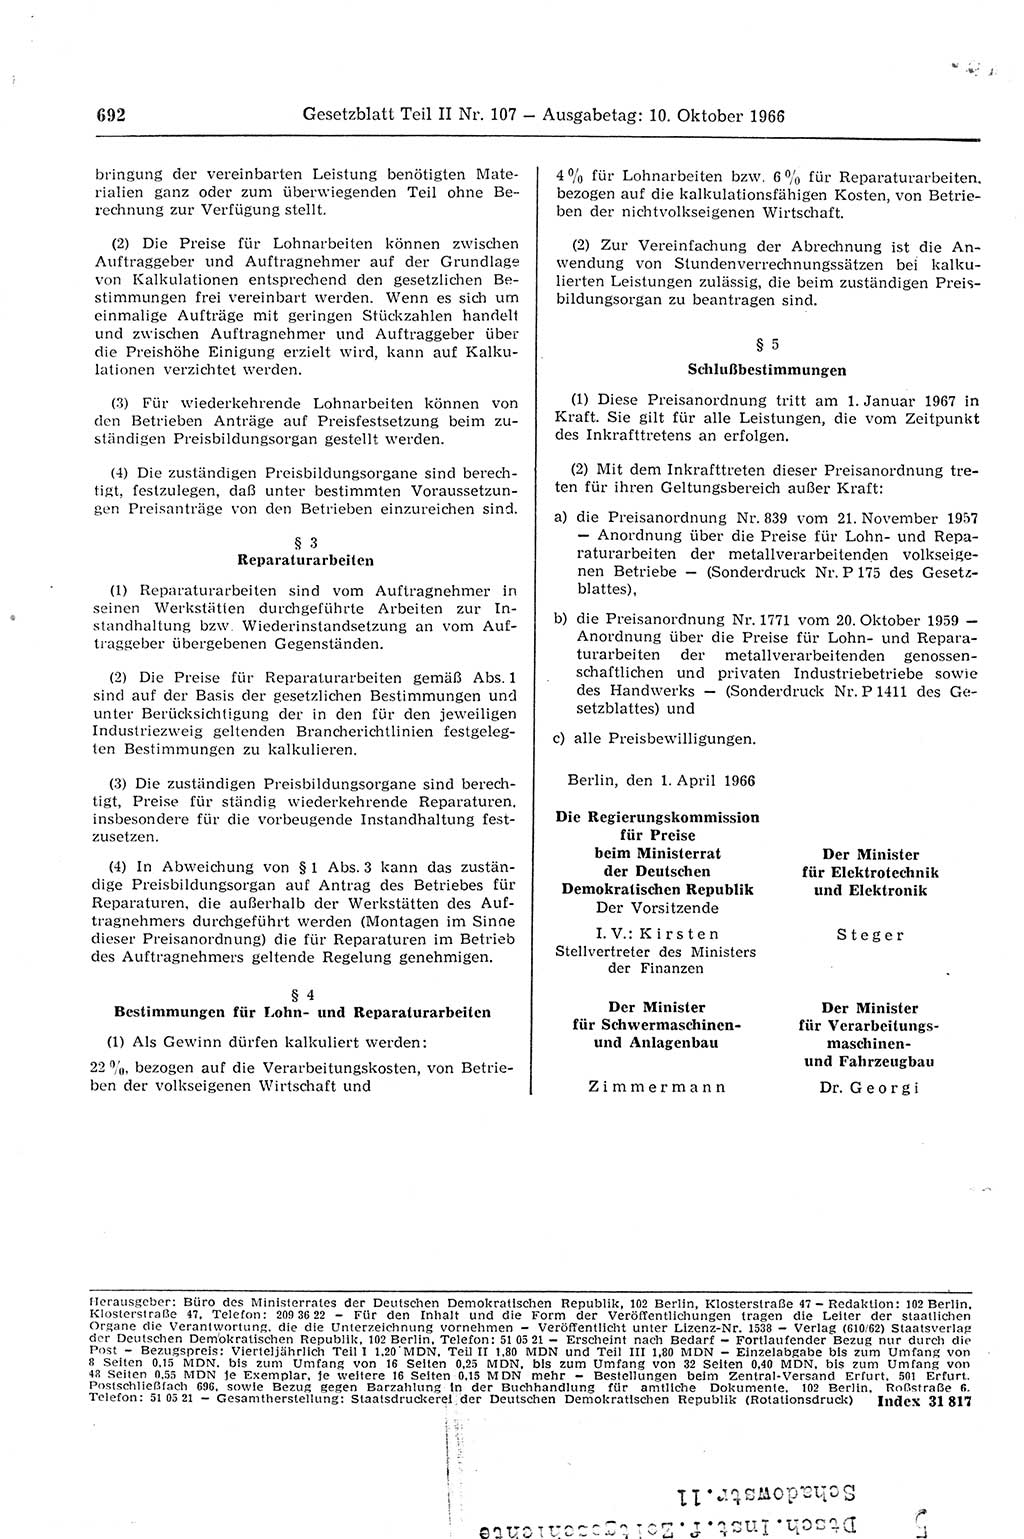 Gesetzblatt (GBl.) der Deutschen Demokratischen Republik (DDR) Teil ⅠⅠ 1966, Seite 692 (GBl. DDR ⅠⅠ 1966, S. 692)